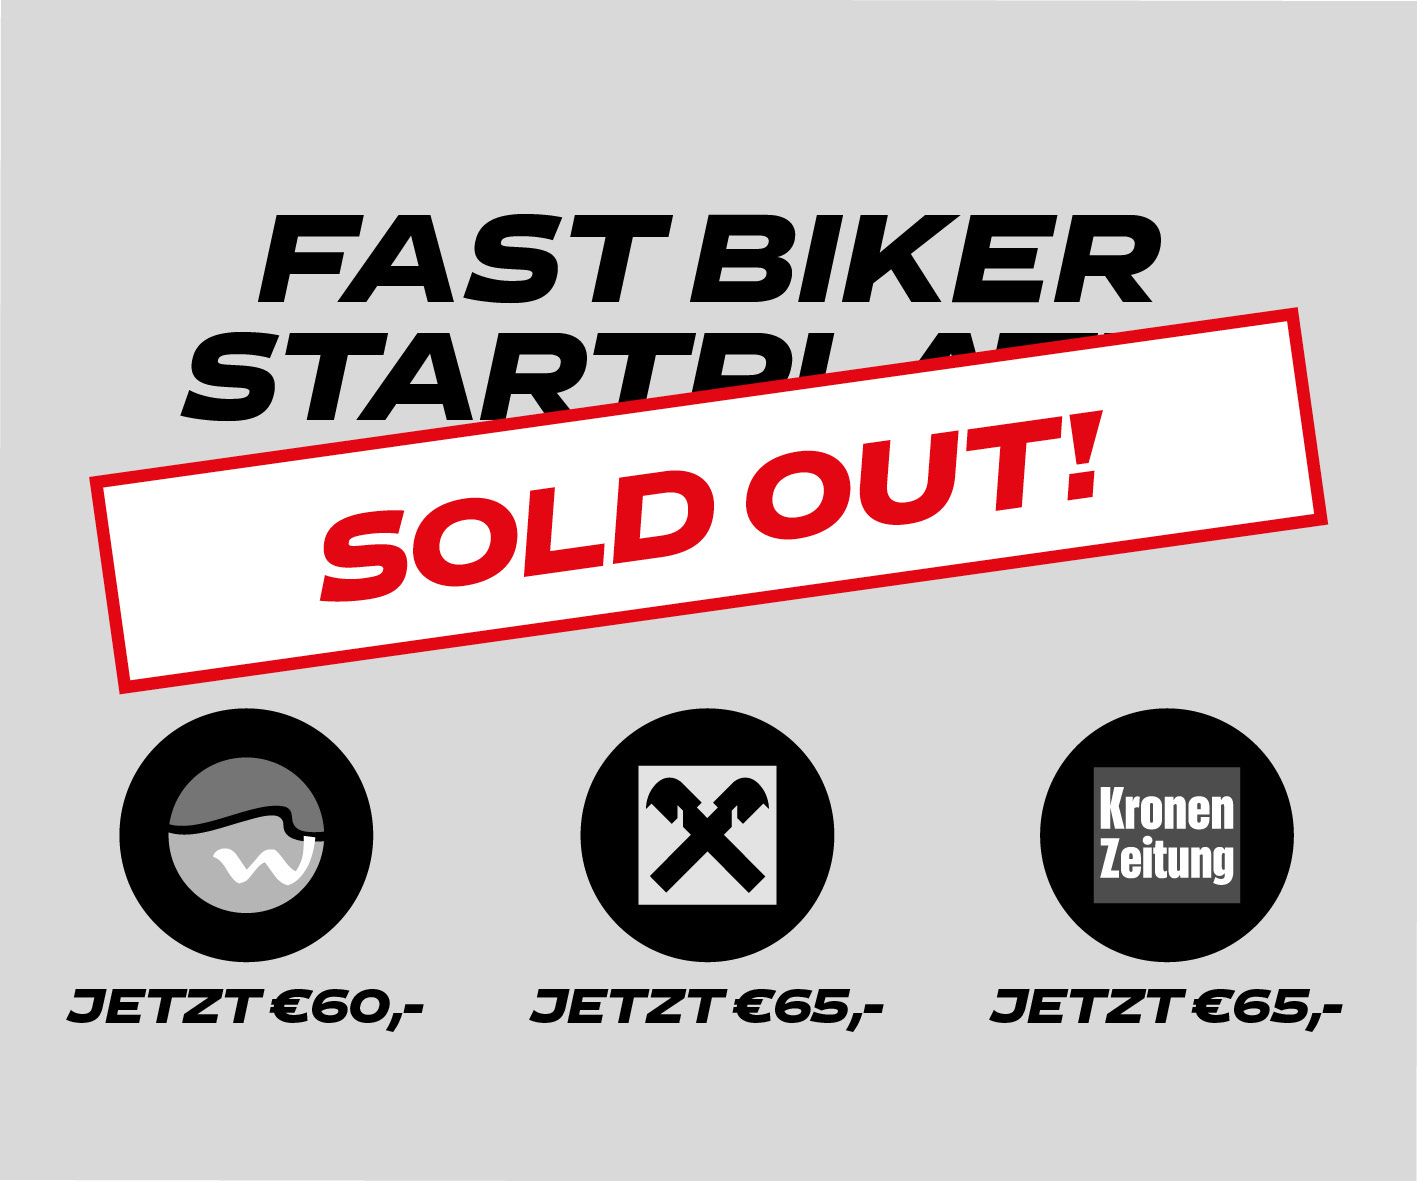 Fast Biker Startplatz - Sold Out